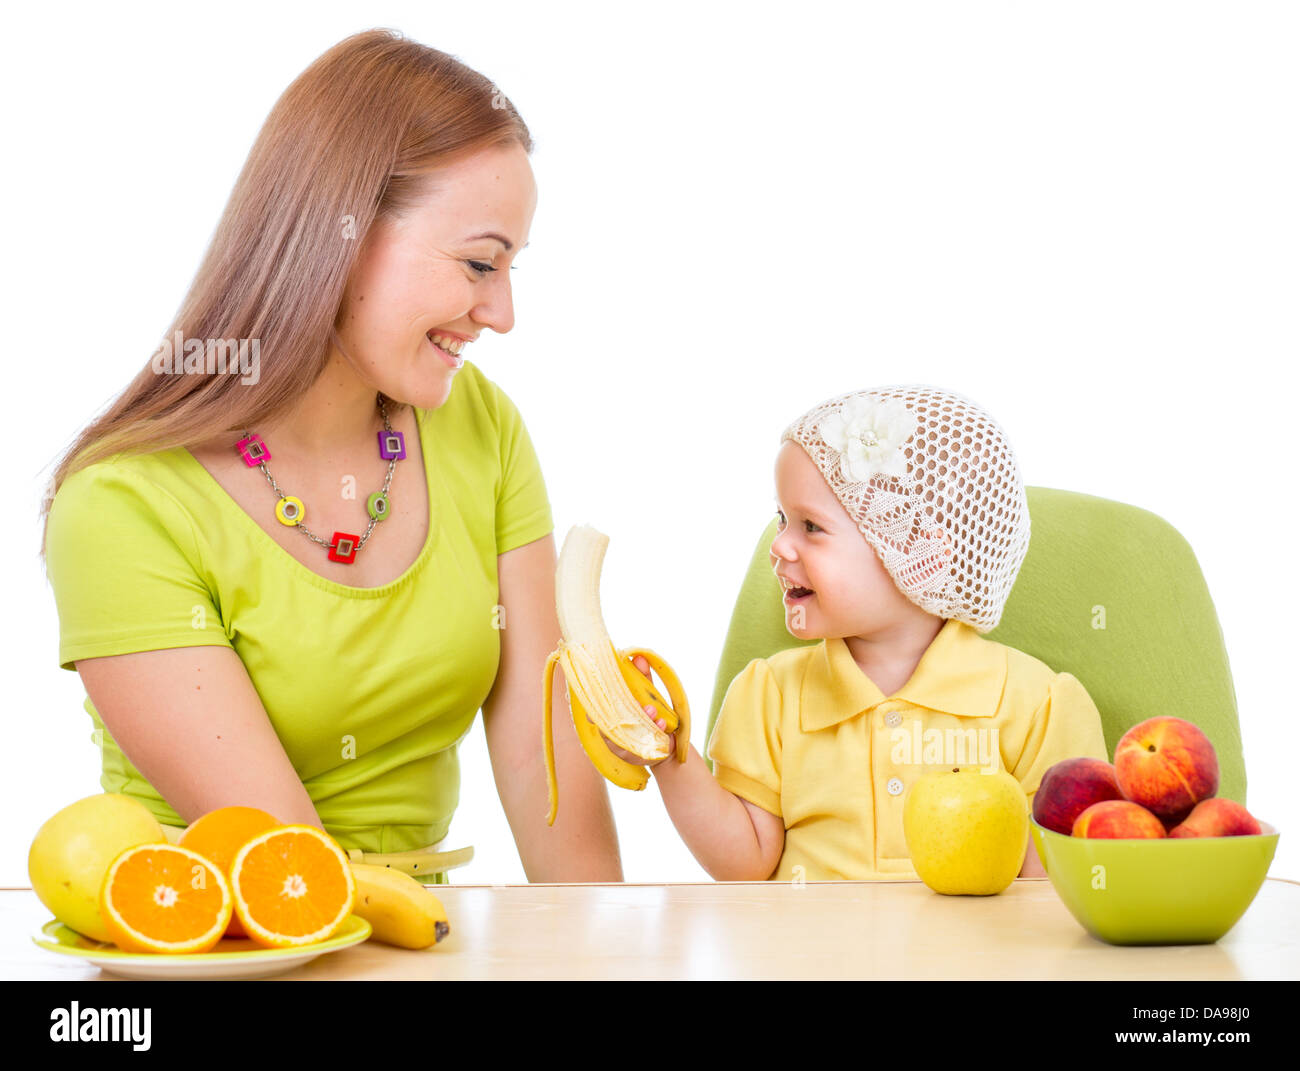 L'alimentation de la mère petite fille aux aliments sains sitting at table isolated on white Banque D'Images